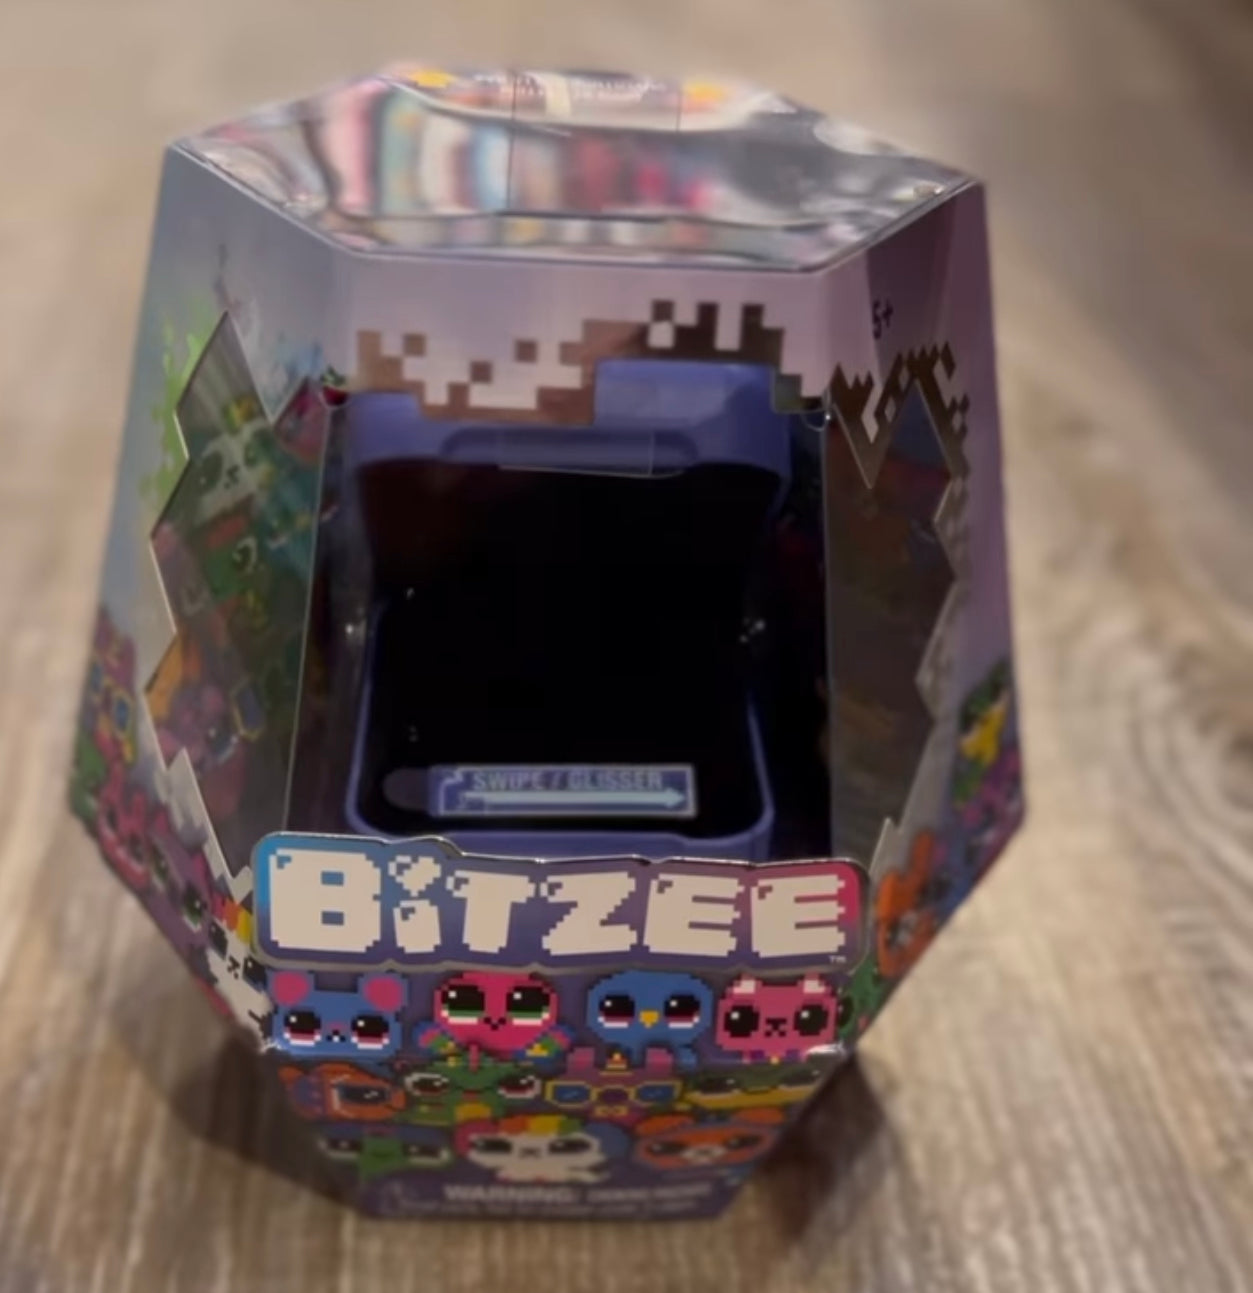 Bitzee - Interactive Digital Pet & Case with 15 Animals - Building Blocks